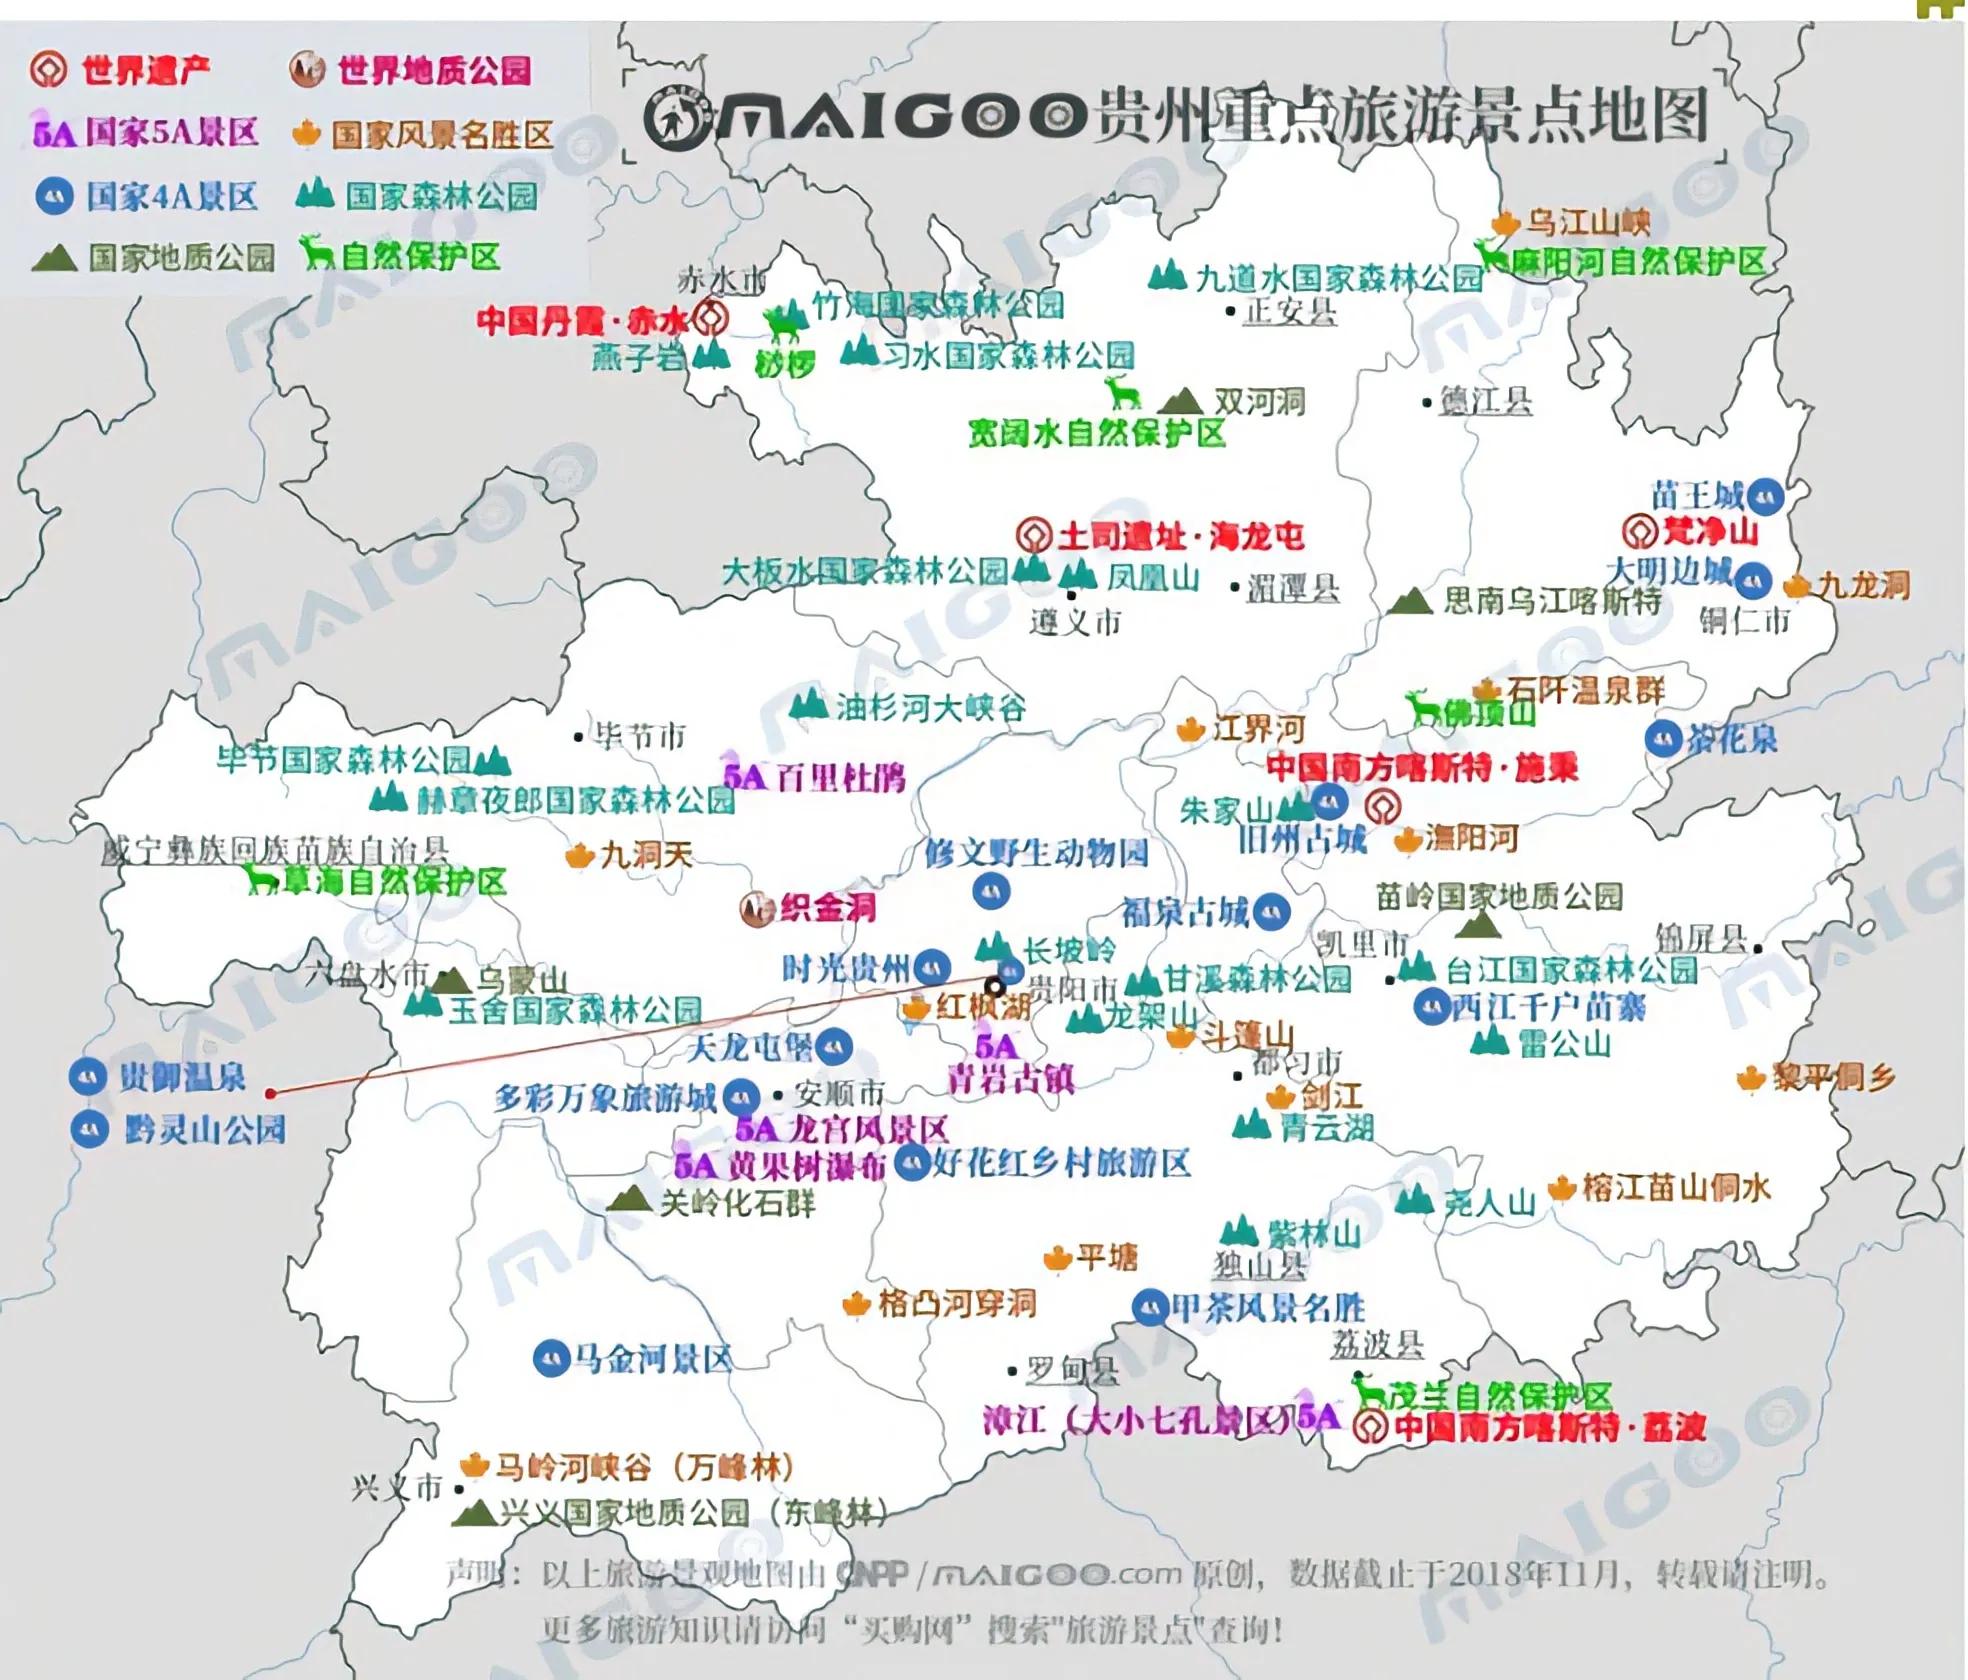 贵州省行政区划地图|贵州省行政区划地图全图高清版大图片|旅途风景图片网|www.visacits.com